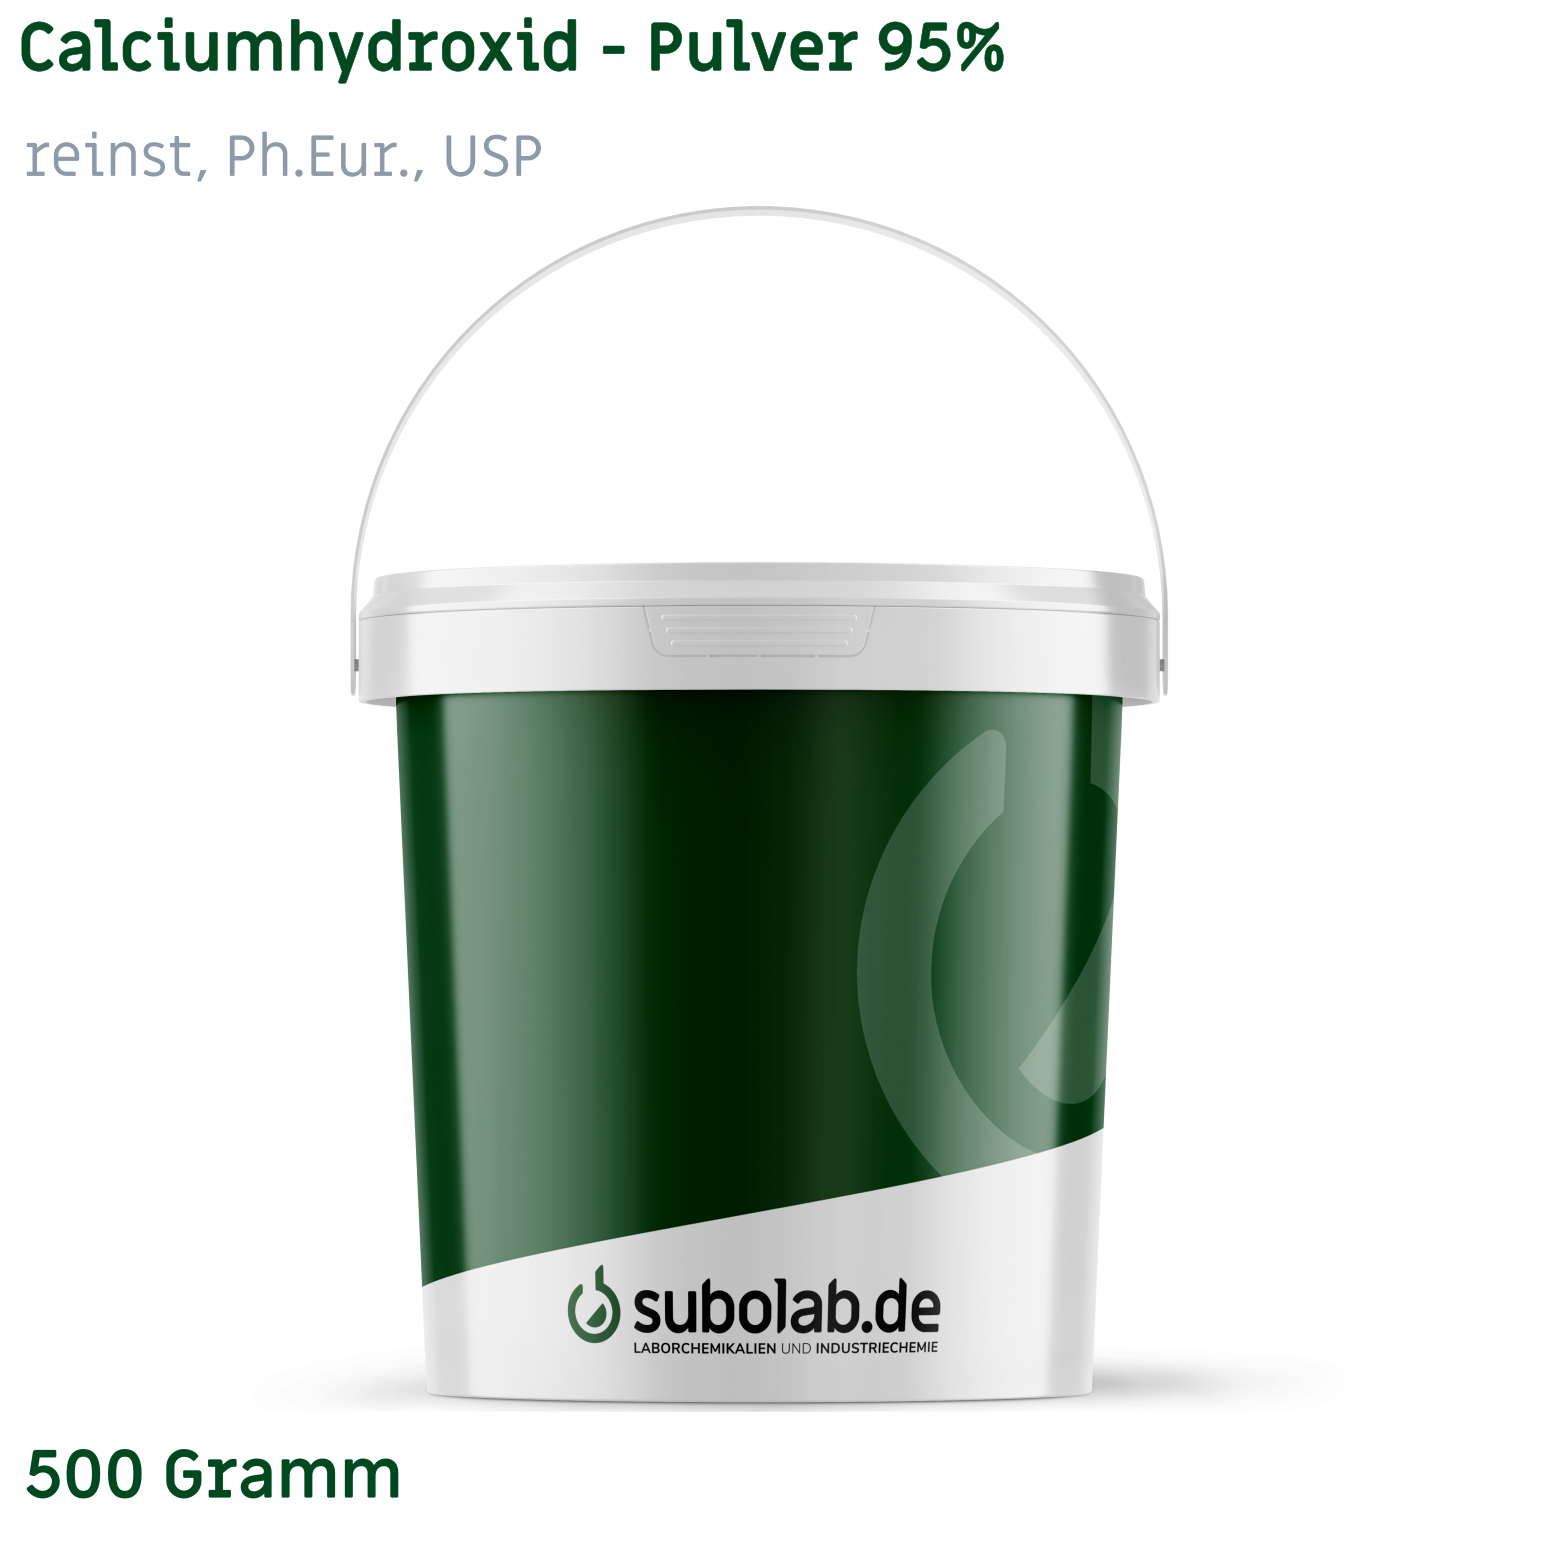 Bild von Calciumhydroxid - Pulver 95% reinst, Ph.Eur., USP (500 Gramm)